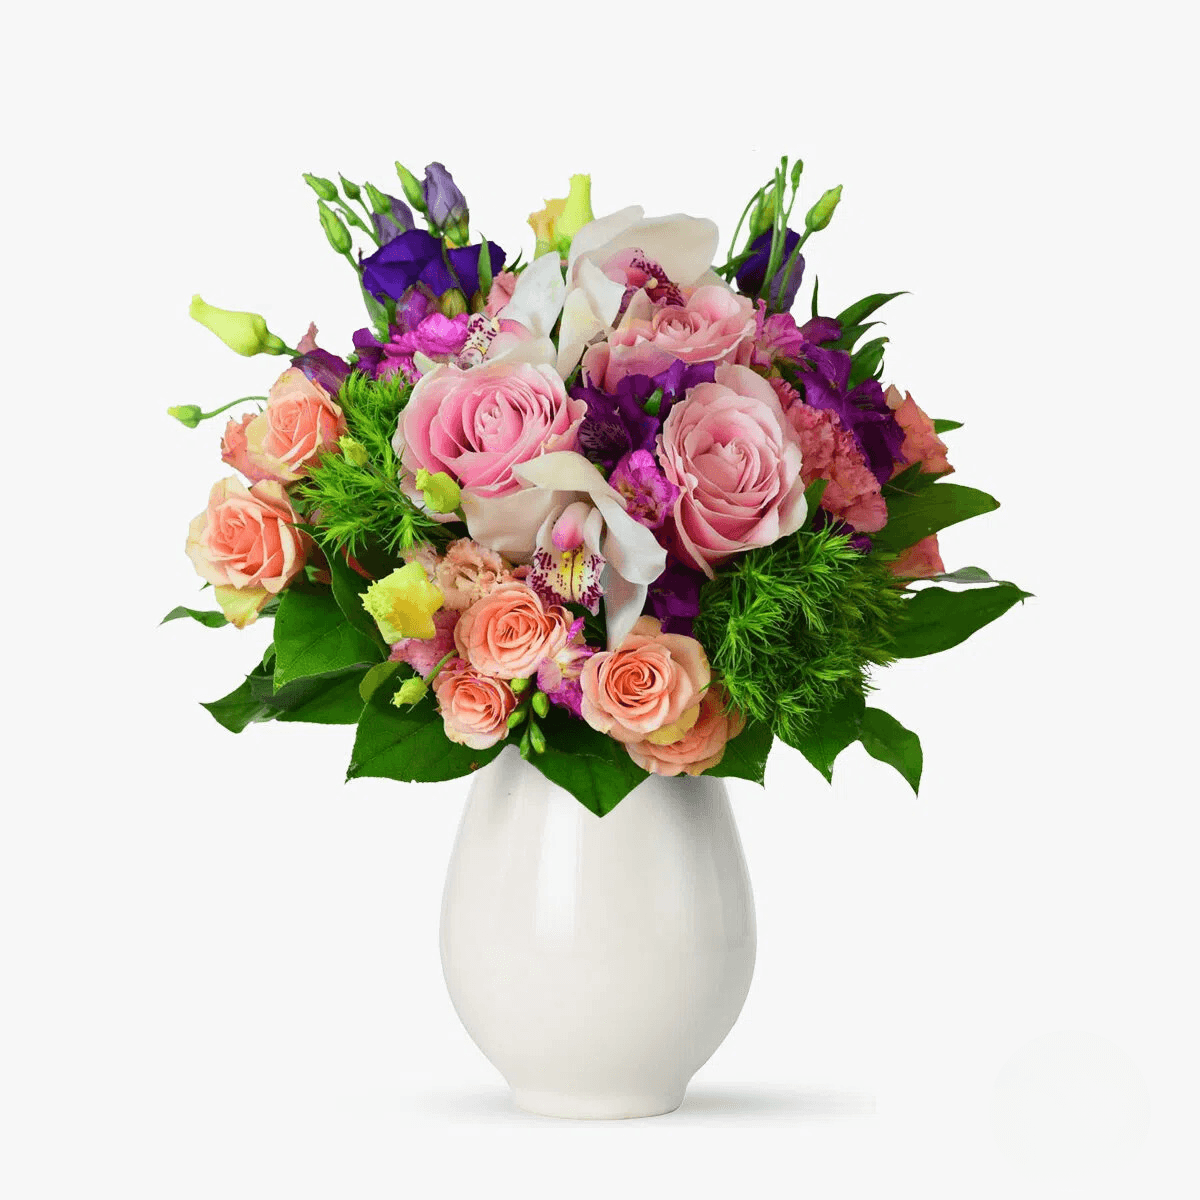 Buchet de flori – Violet Aniversar – Premium aniversar imagine 2022